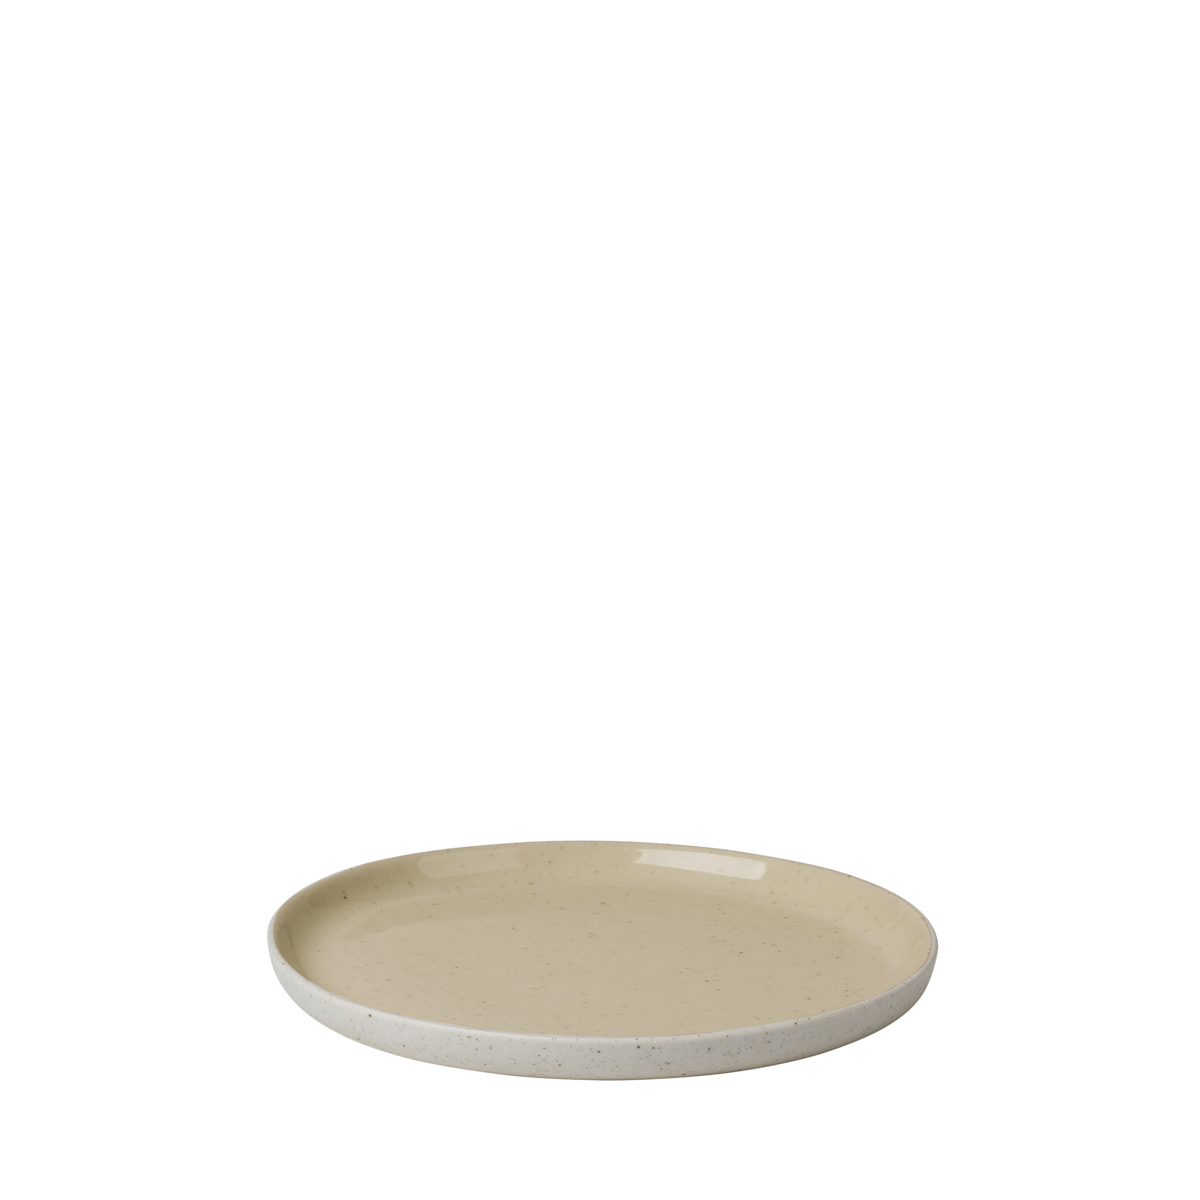 Beilagenteller -SABLO- Savannah, Ø 14 cm. Material: Keramik. Von Blomus.